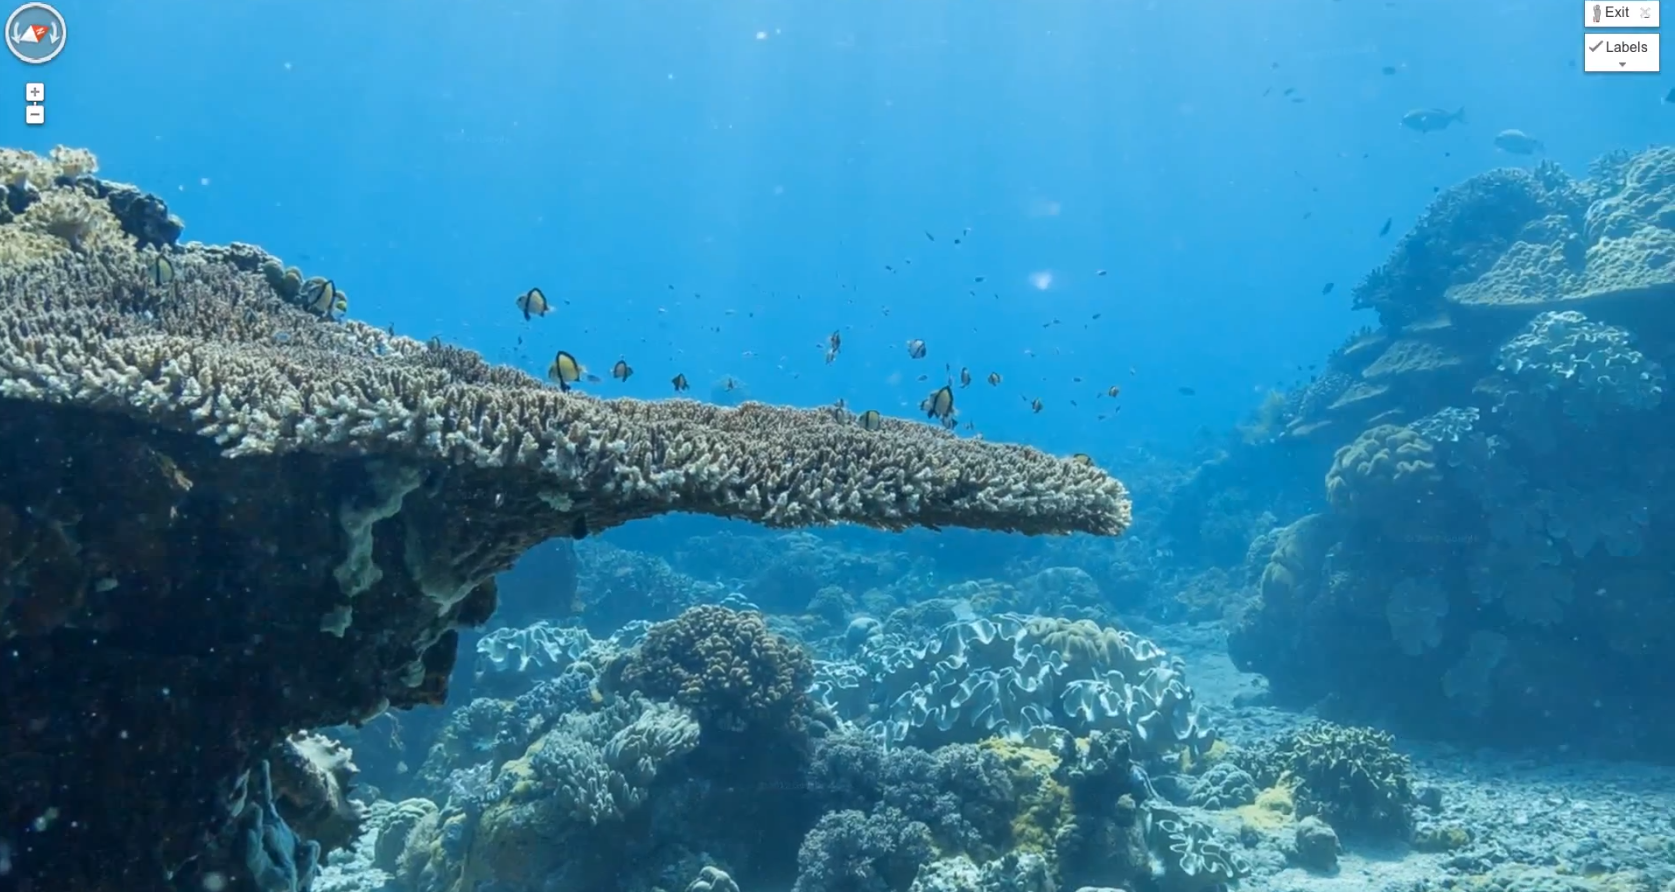 Just nu går det att utforska korallrev i Australien, Filippinerna och Hawaii.